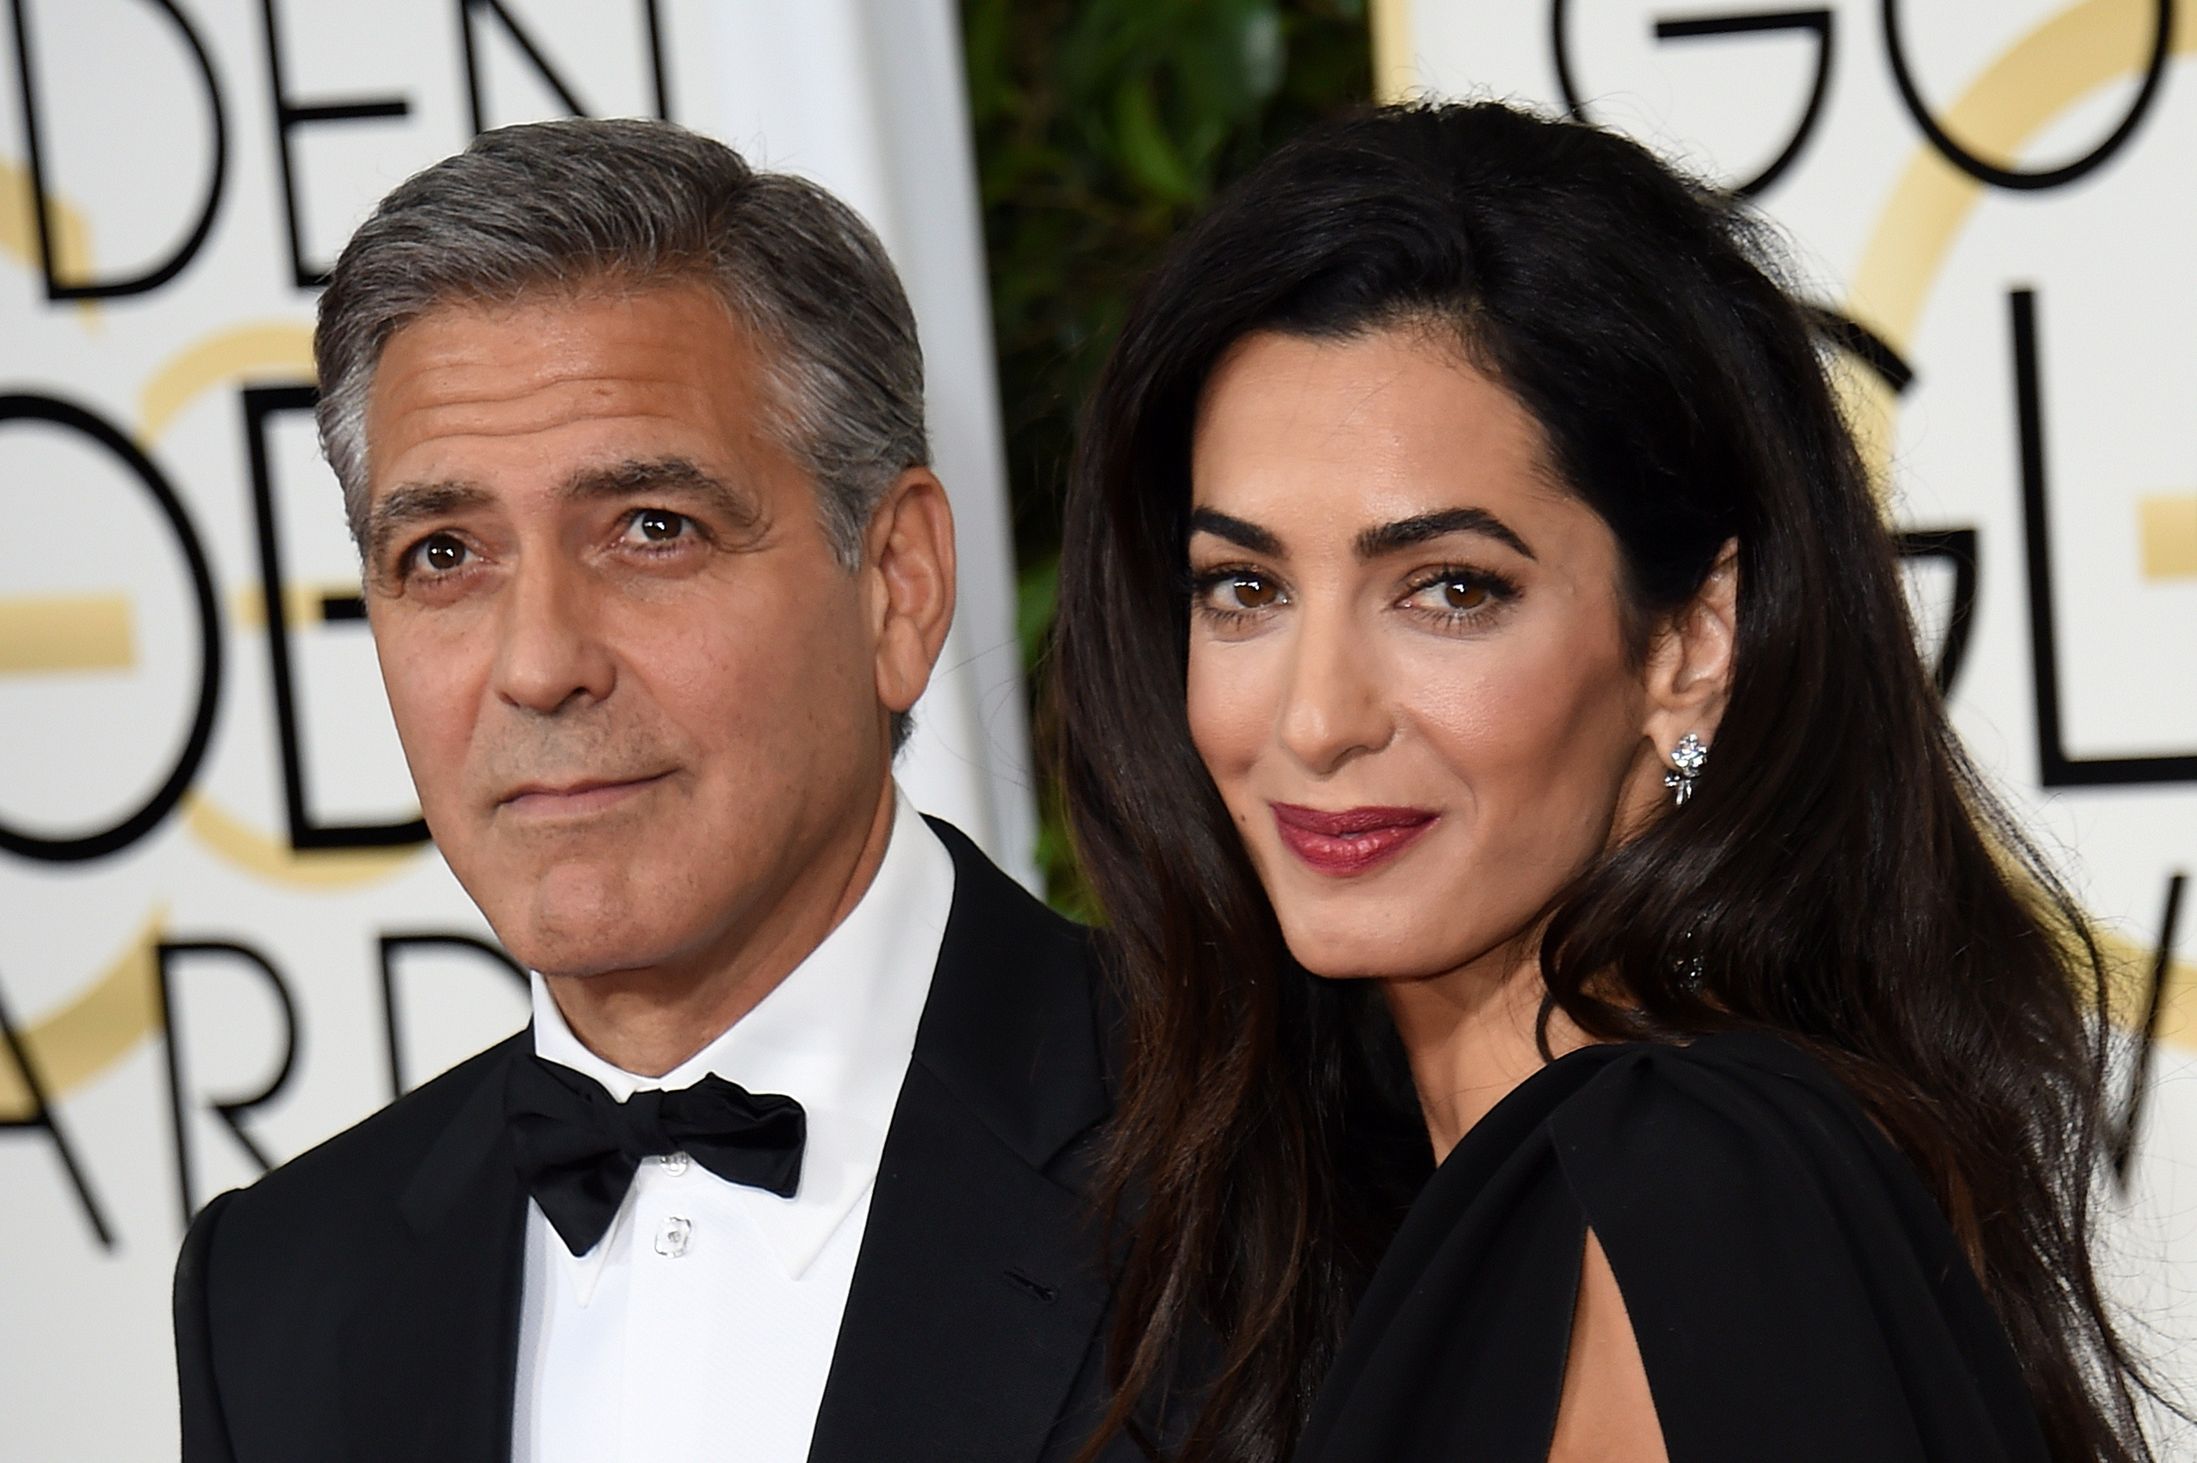 Realizoi ëndrrën e tij për të luajtur në një serial komedi, George Clooney për Matthew Perry: Nuk i solli lumturi